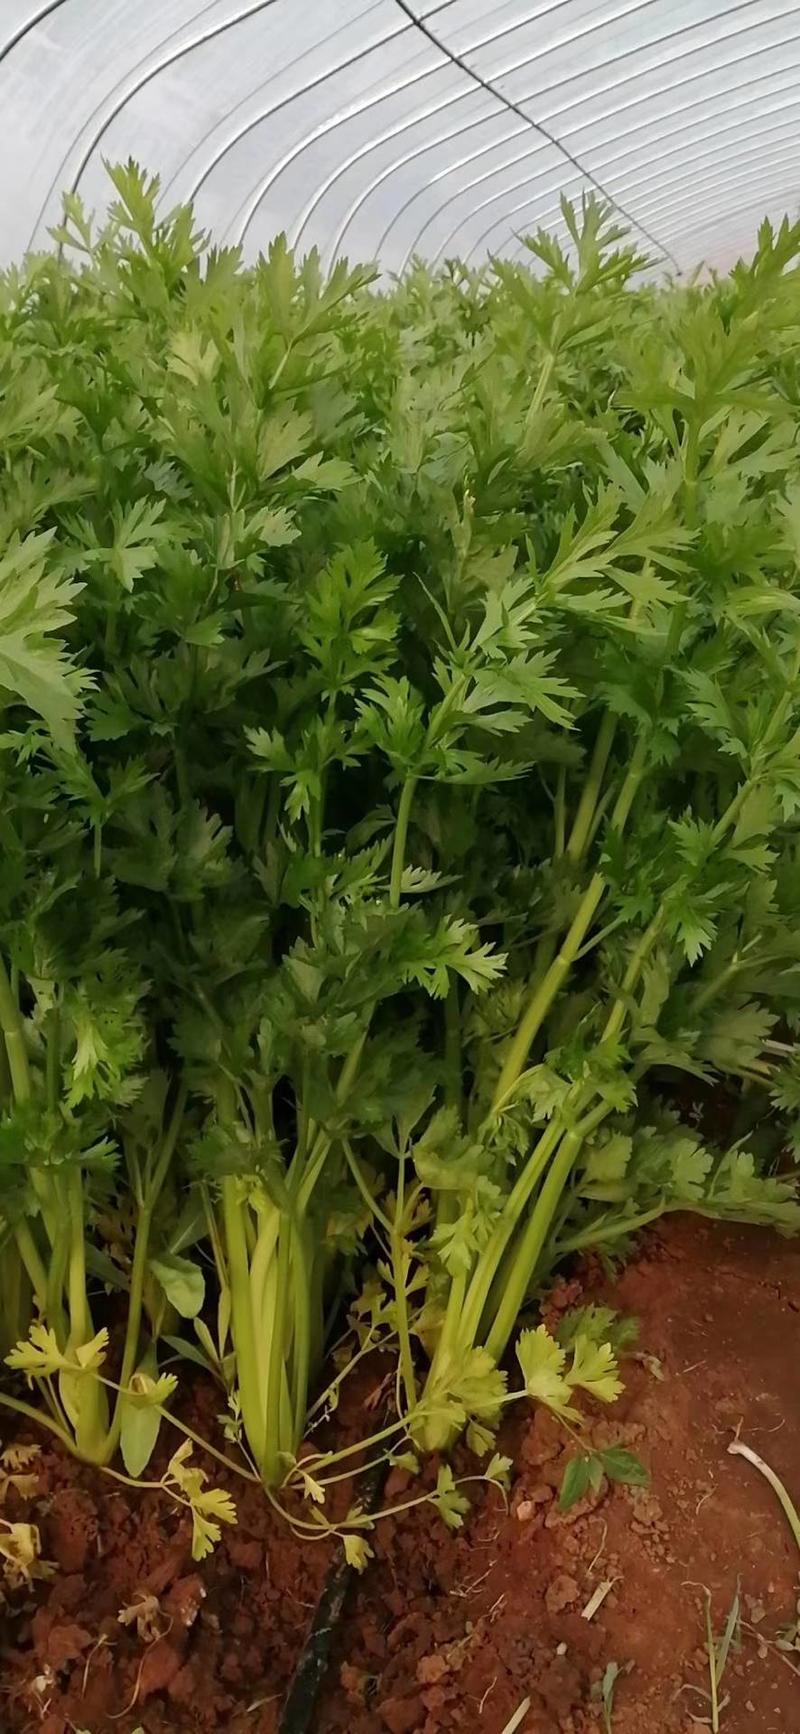 澳冠皇后西芹种子法国进口夏季耐热黄嫩油亮实心芹菜种子